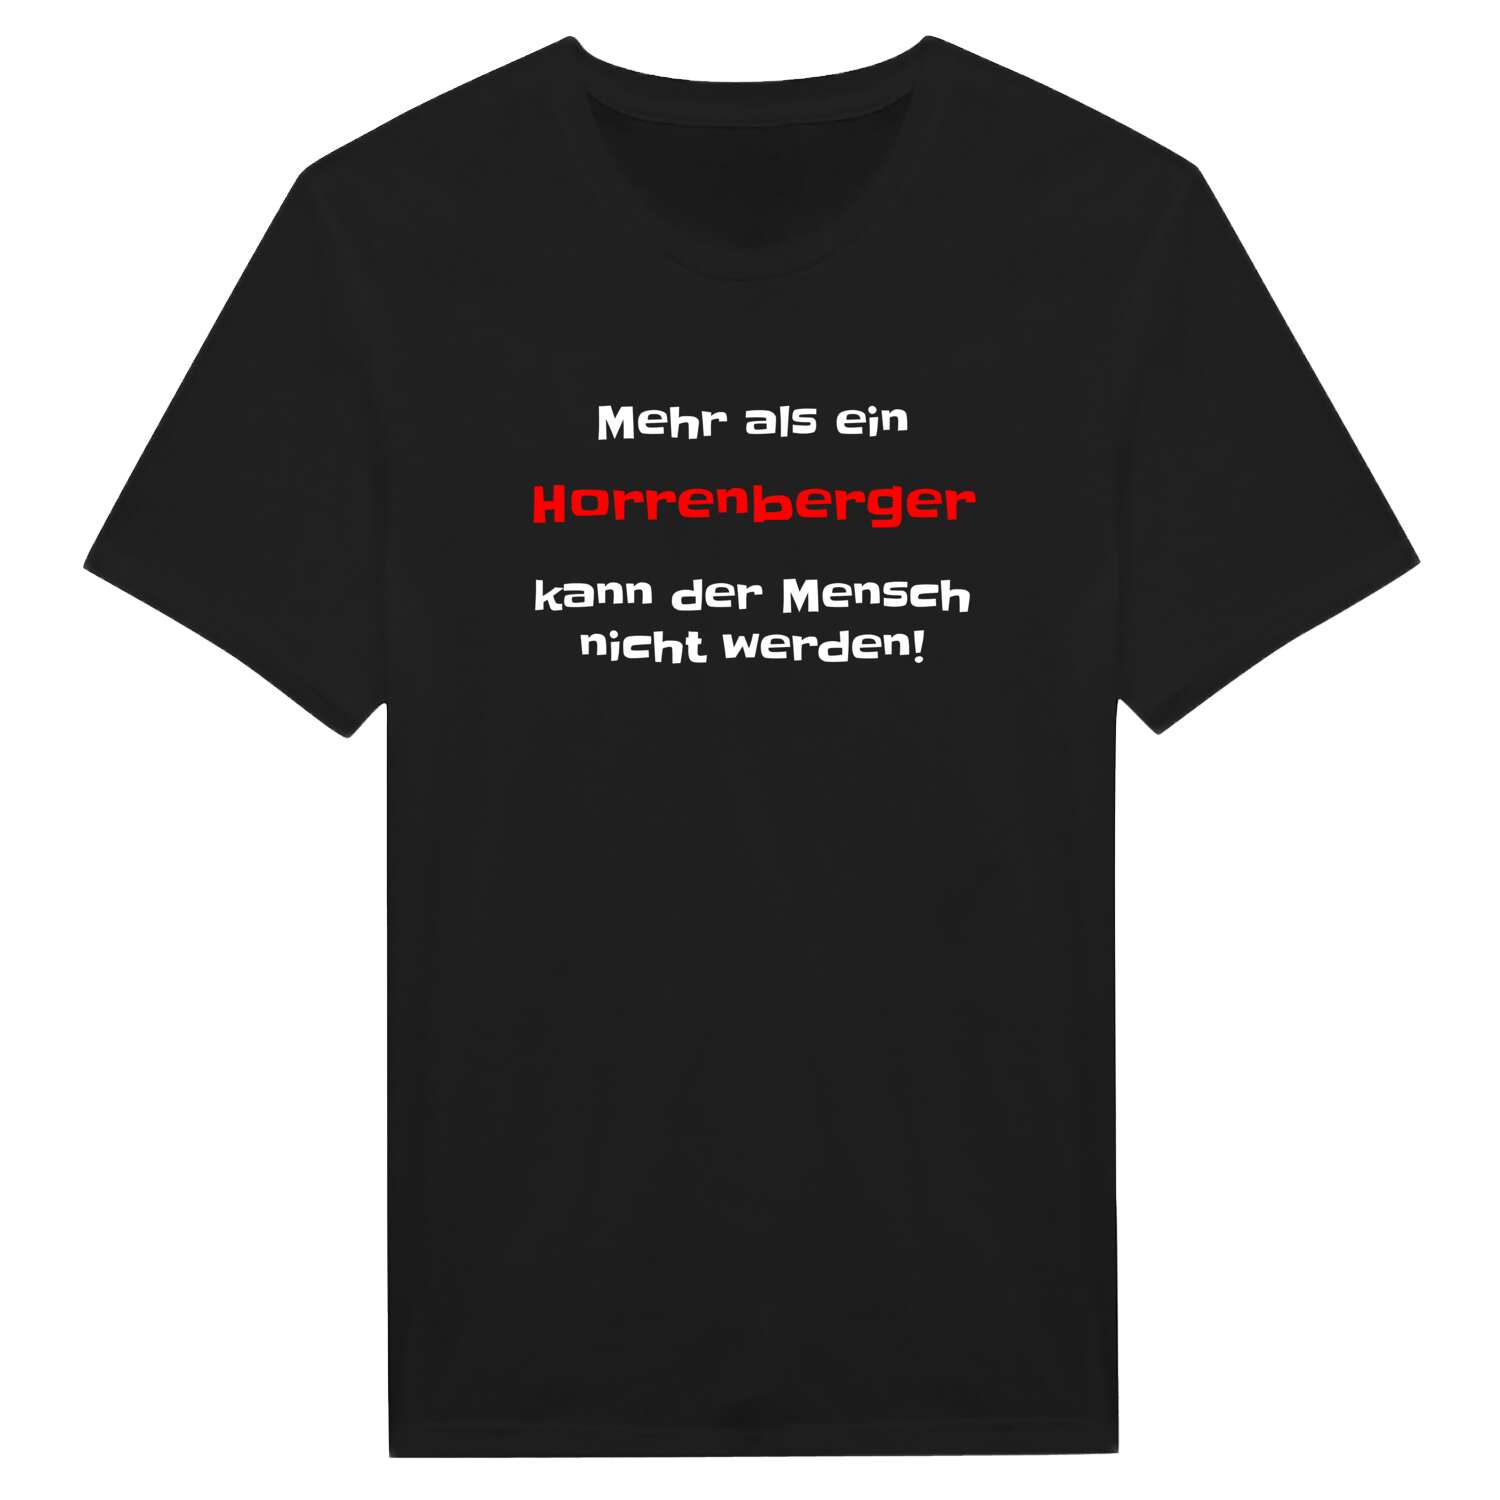 Horrenberg T-Shirt »Mehr als ein«